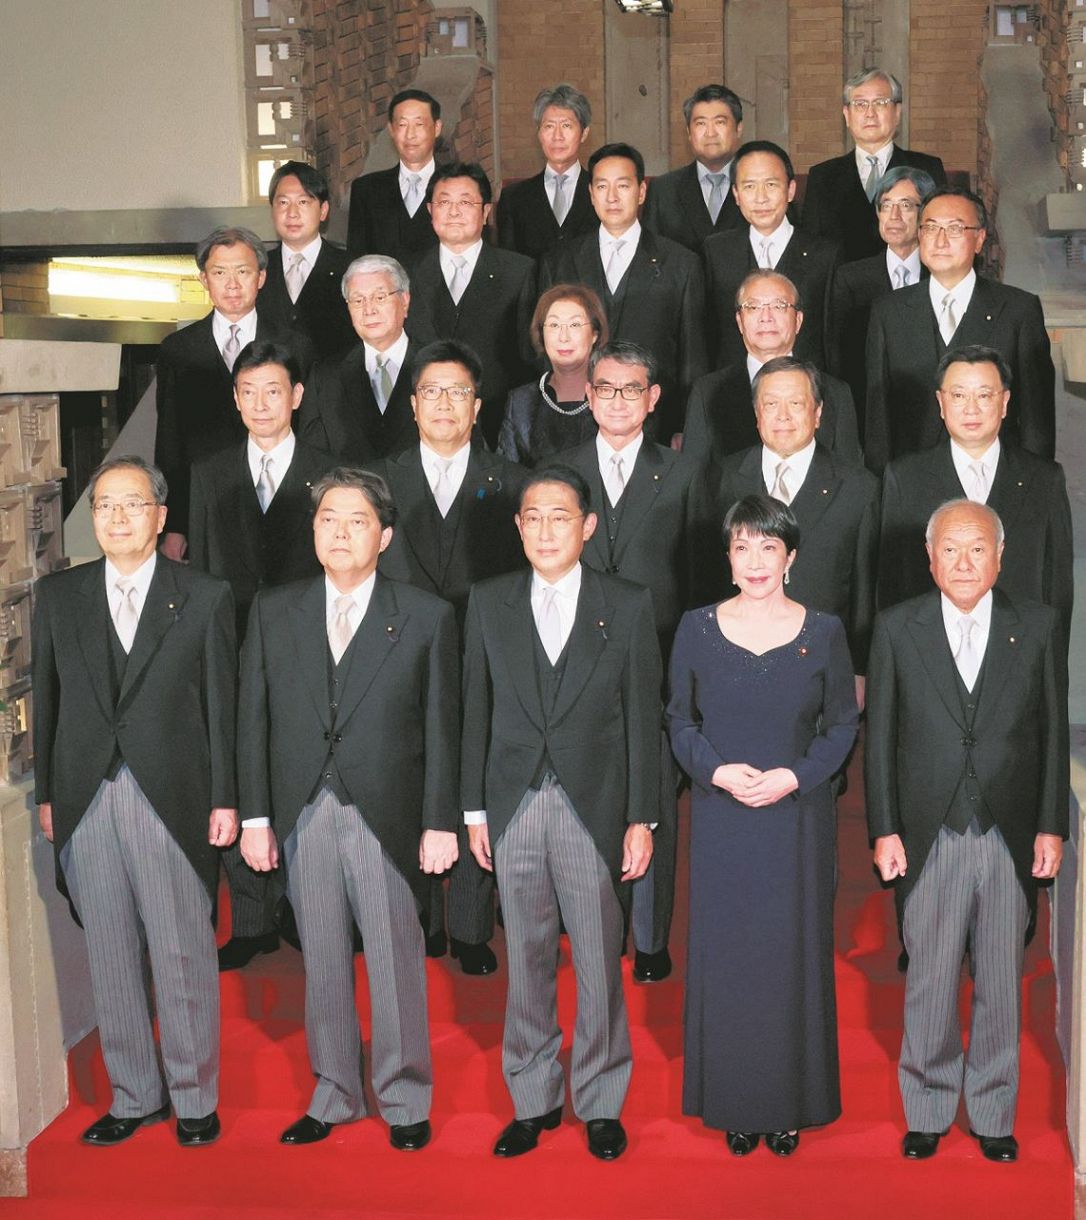 「忘年会写真」の舞台ともなった公邸の階段で、昨年8月、第2次岸田改造内閣発足の記念撮影を行う閣僚。世襲議員が多い